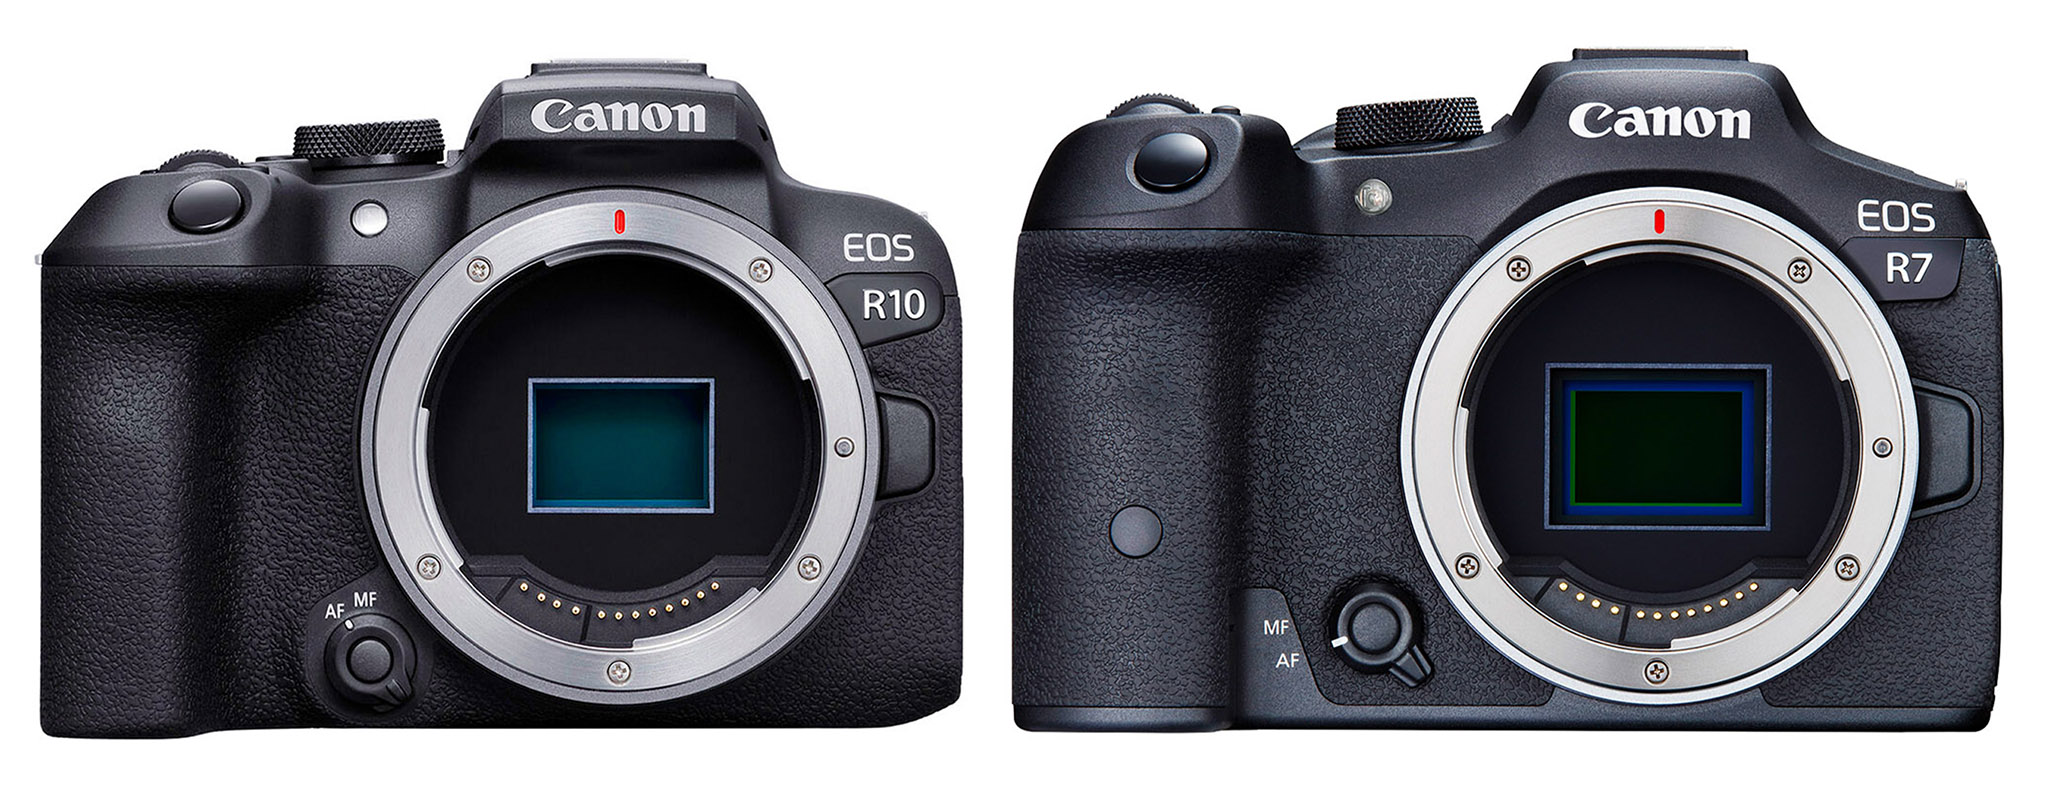 The Canon EOS R7 and Canon EOS R10